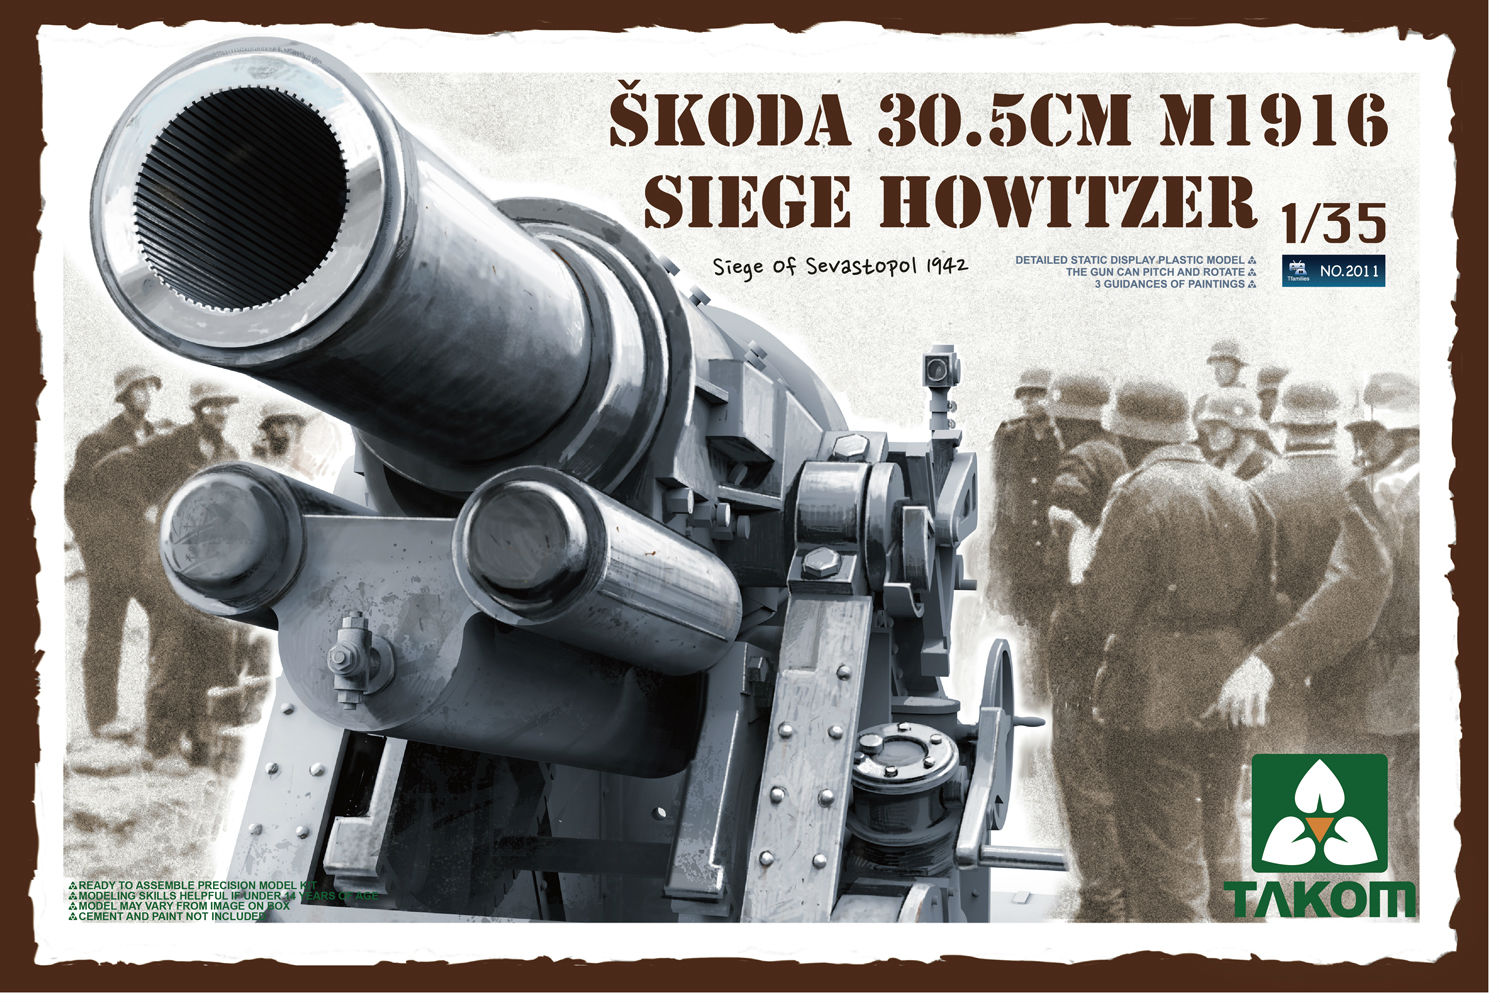 Škoda 30.5cm M1916 Siege Howitzer